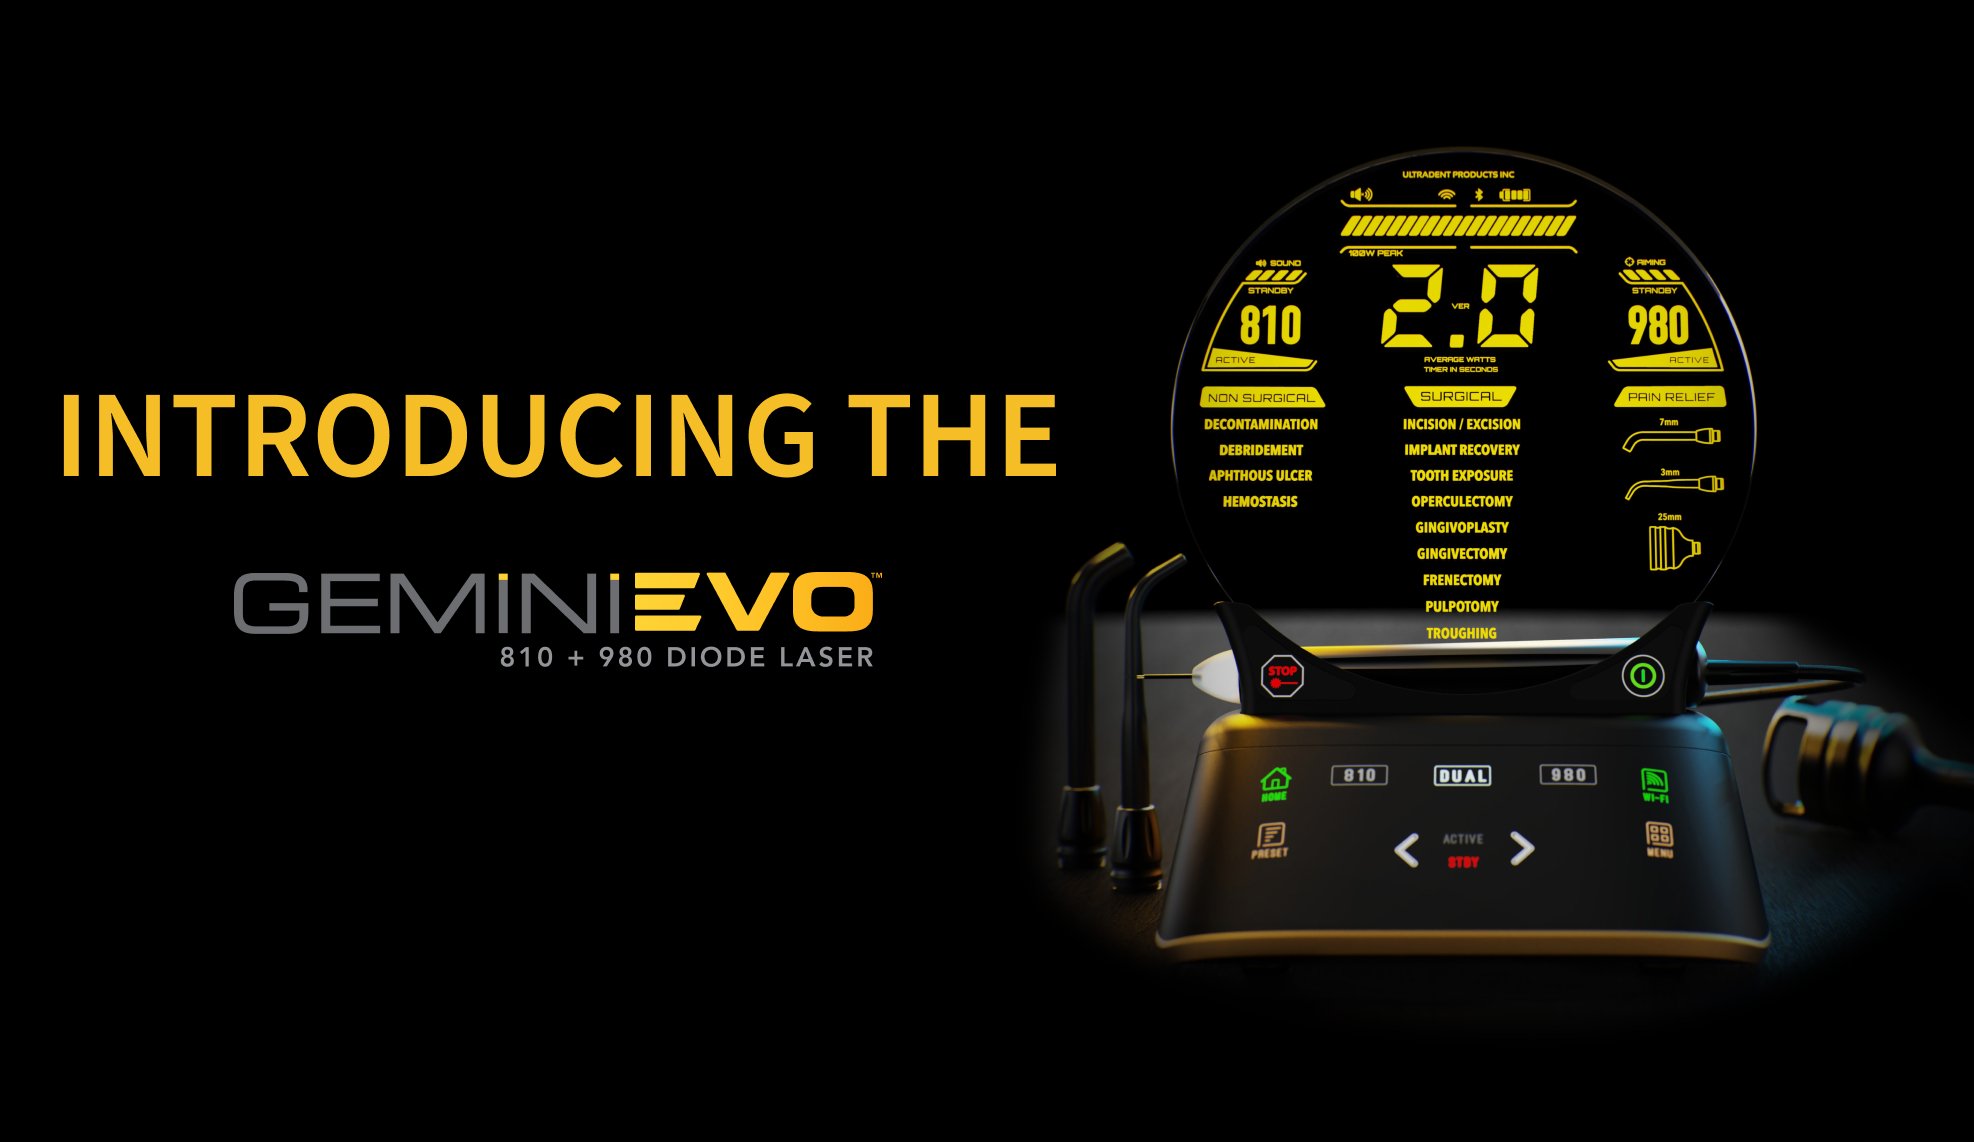 Der Gemini EVO™ Diodenlaser setzt neue Standards in der Laserzahnheilkunde